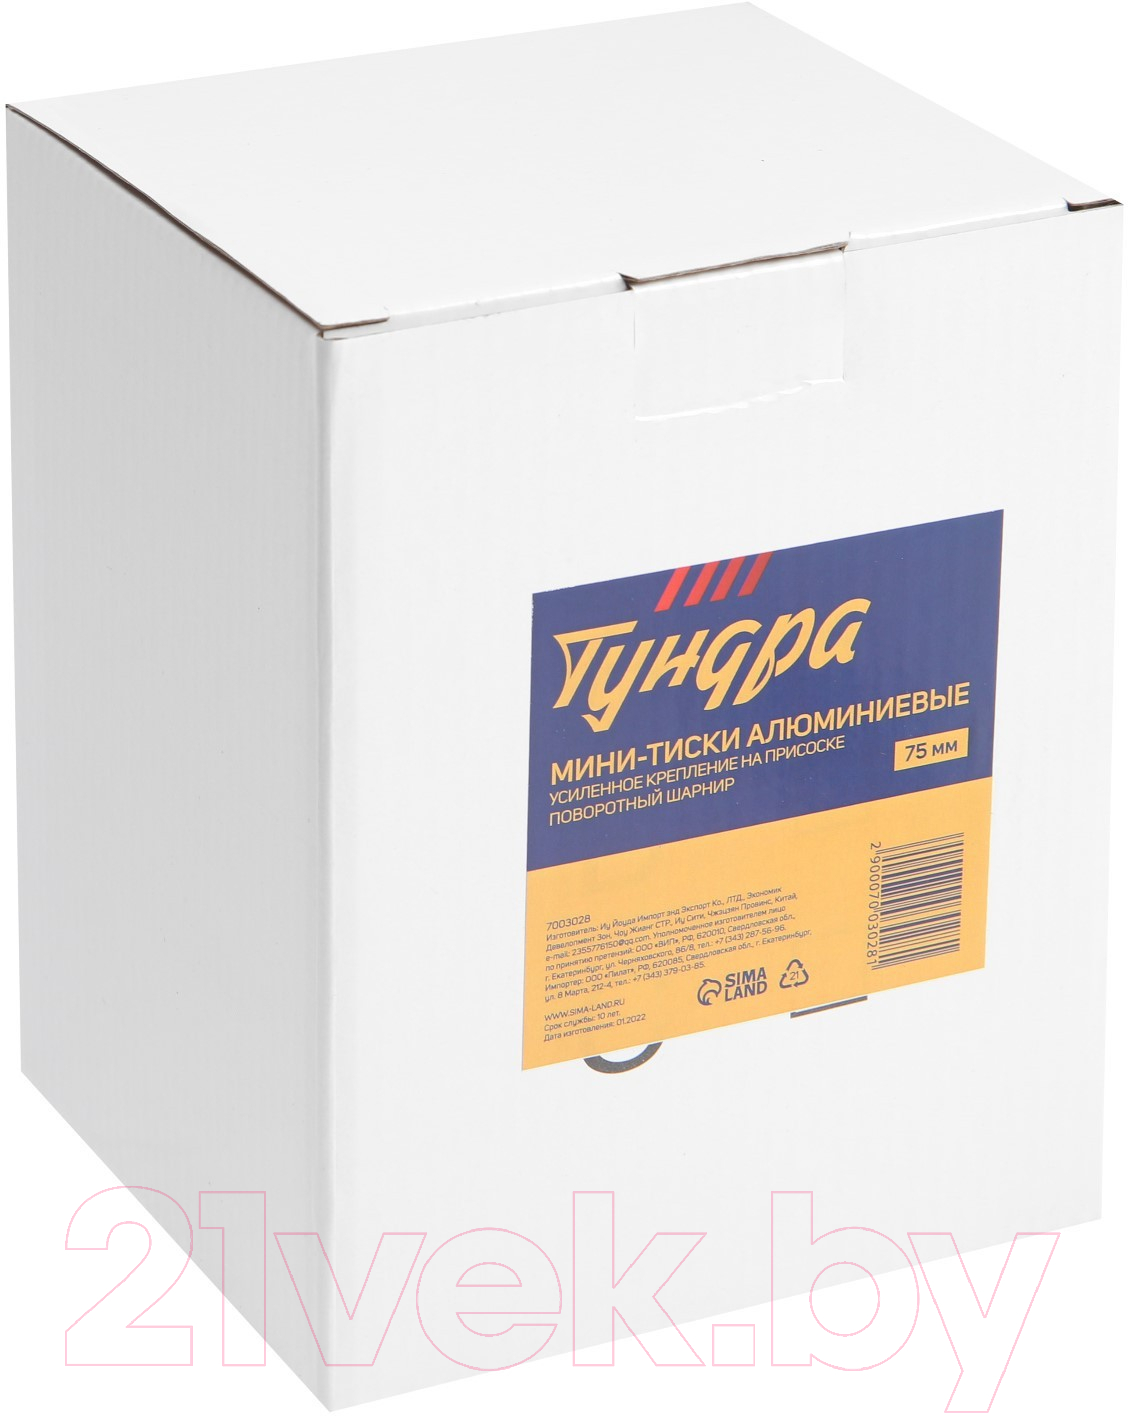 Тиски Tundra 7003028